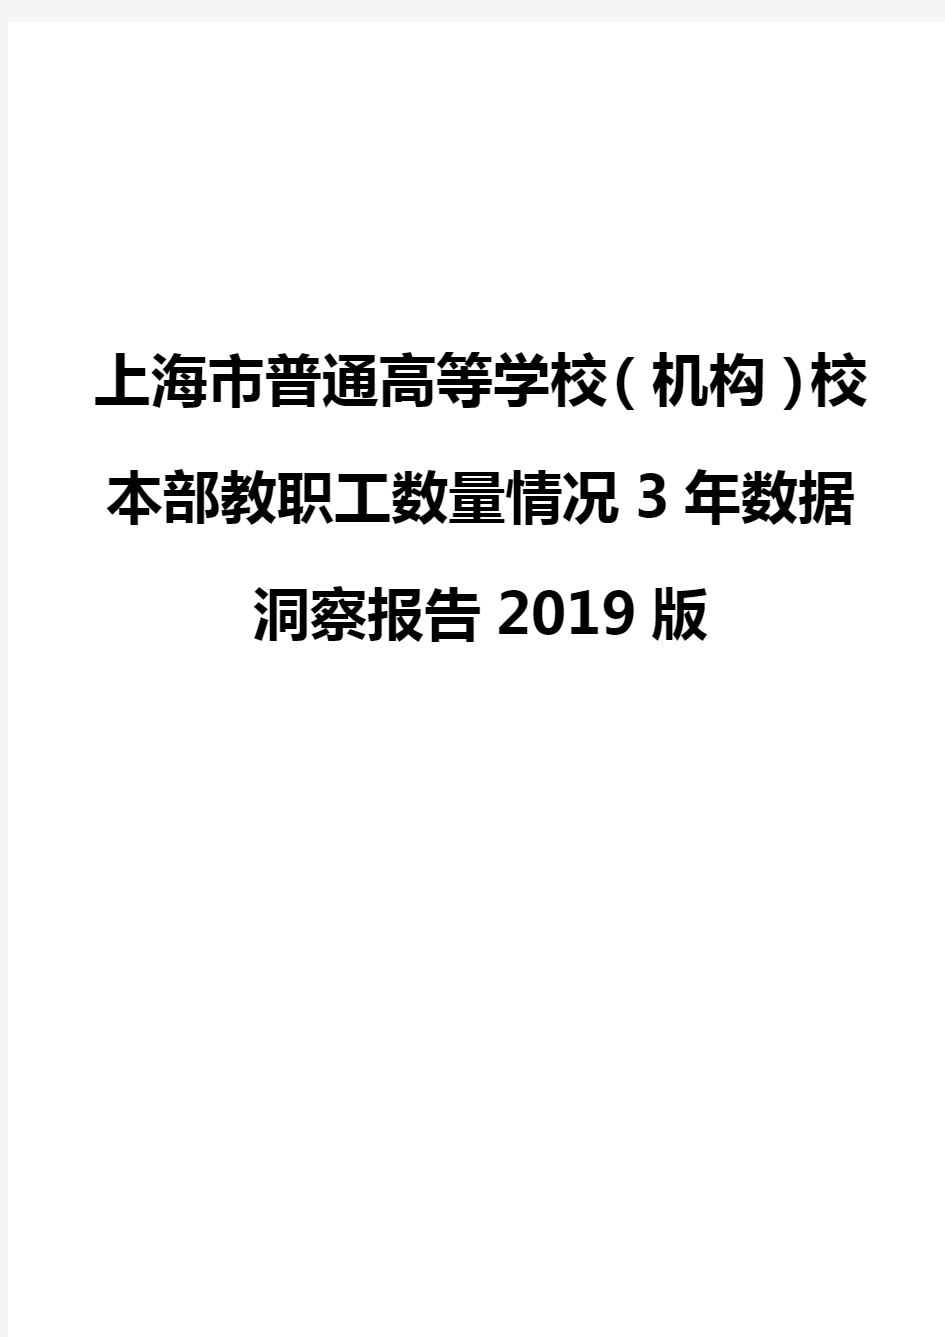 上海市普通高等学校(机构)校本部教职工数量情况3年数据洞察报告2019版